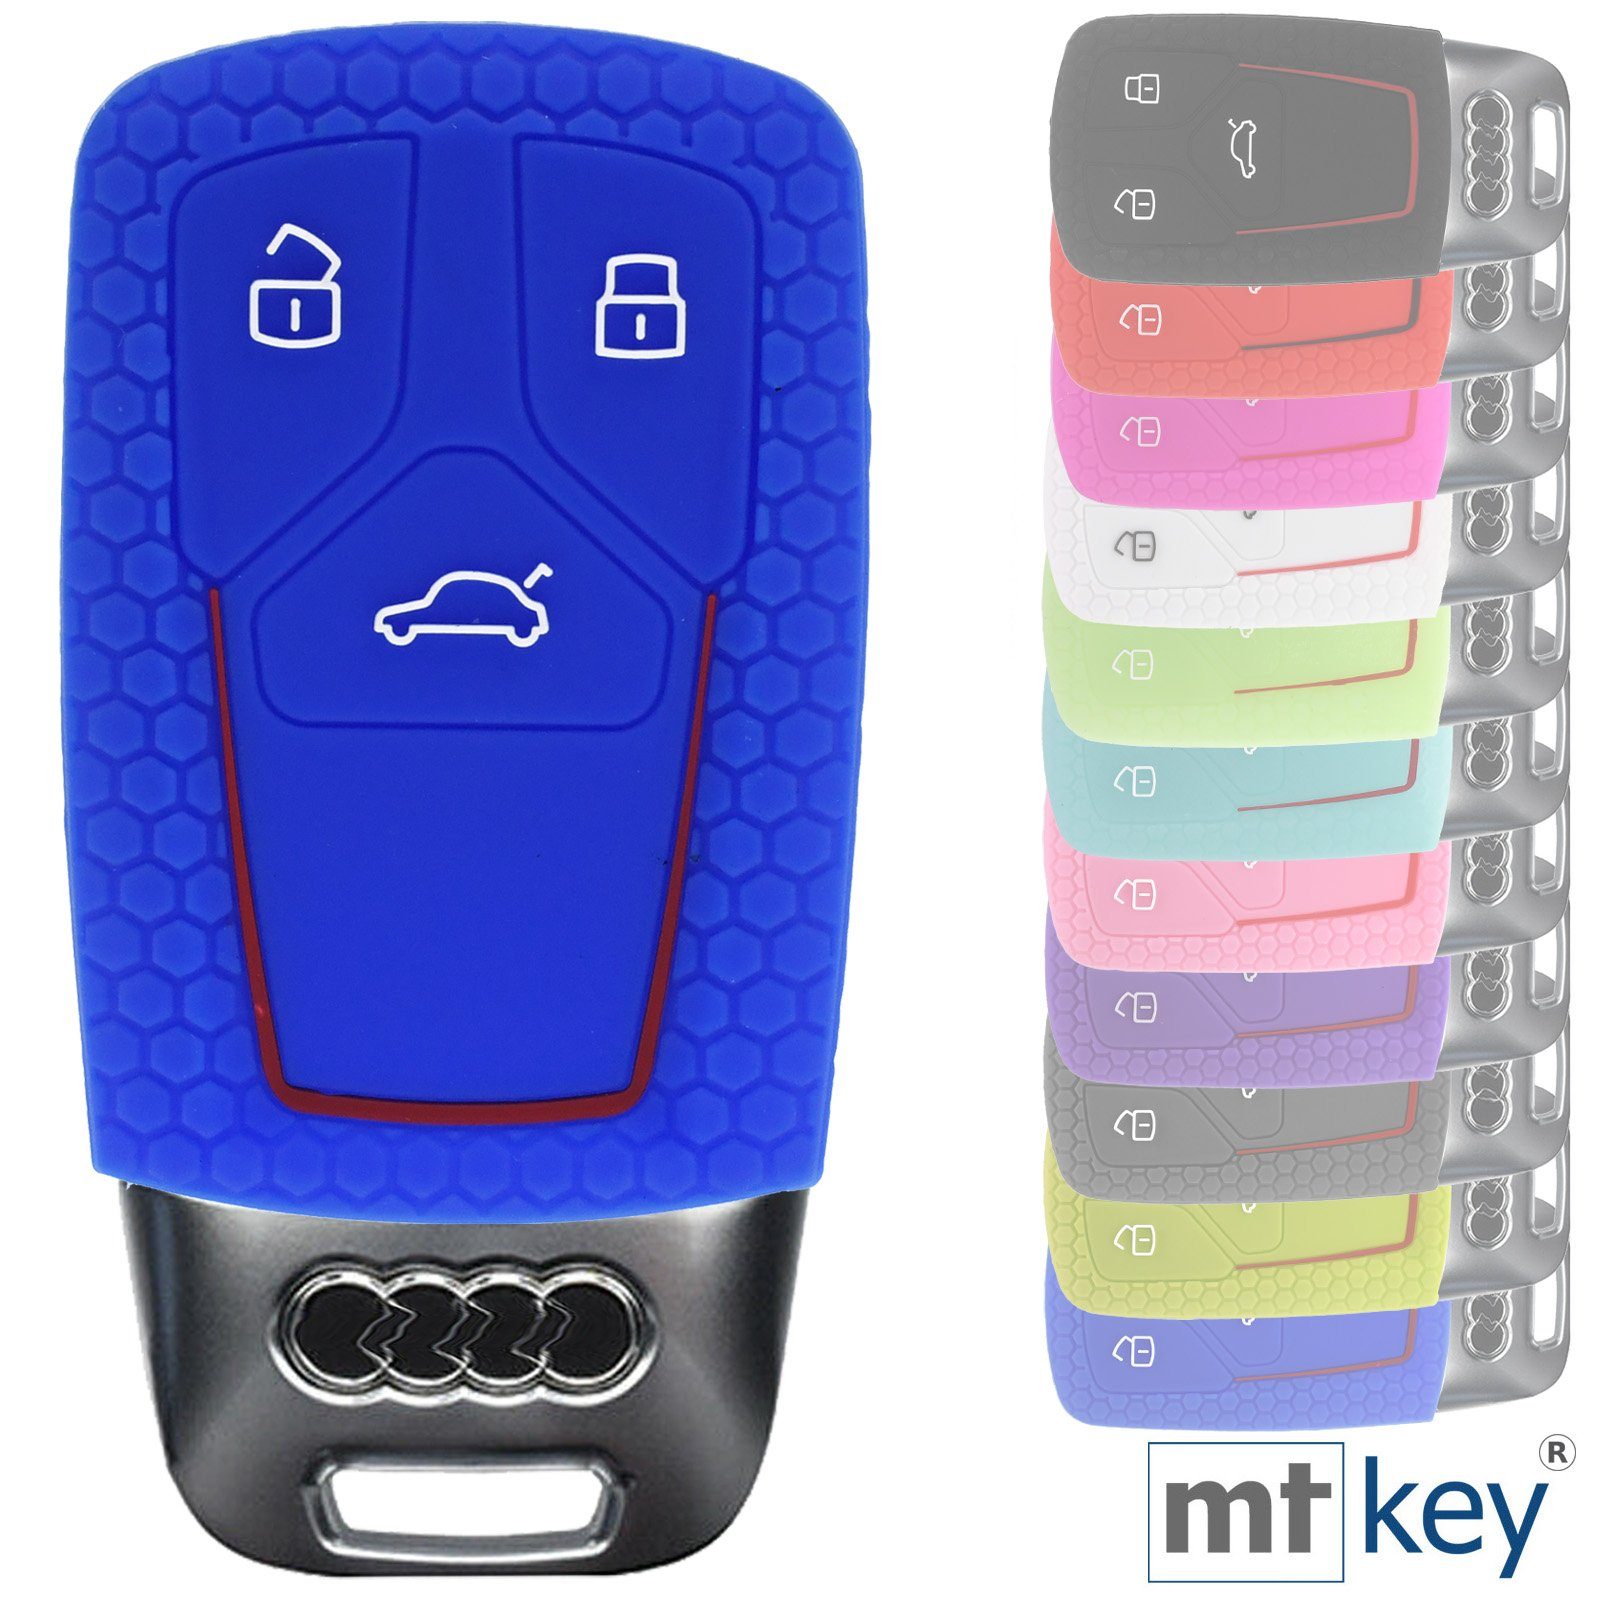 mt-key Schlüsseltasche Autoschlüssel Softcase Silikon Schutzhülle im Wabe Design Blau, für Audi A4 A5 A6 A7 TT Q2 Q5 Q7 A8 Q8 3 Tasten KEYLESS SMARTKEY